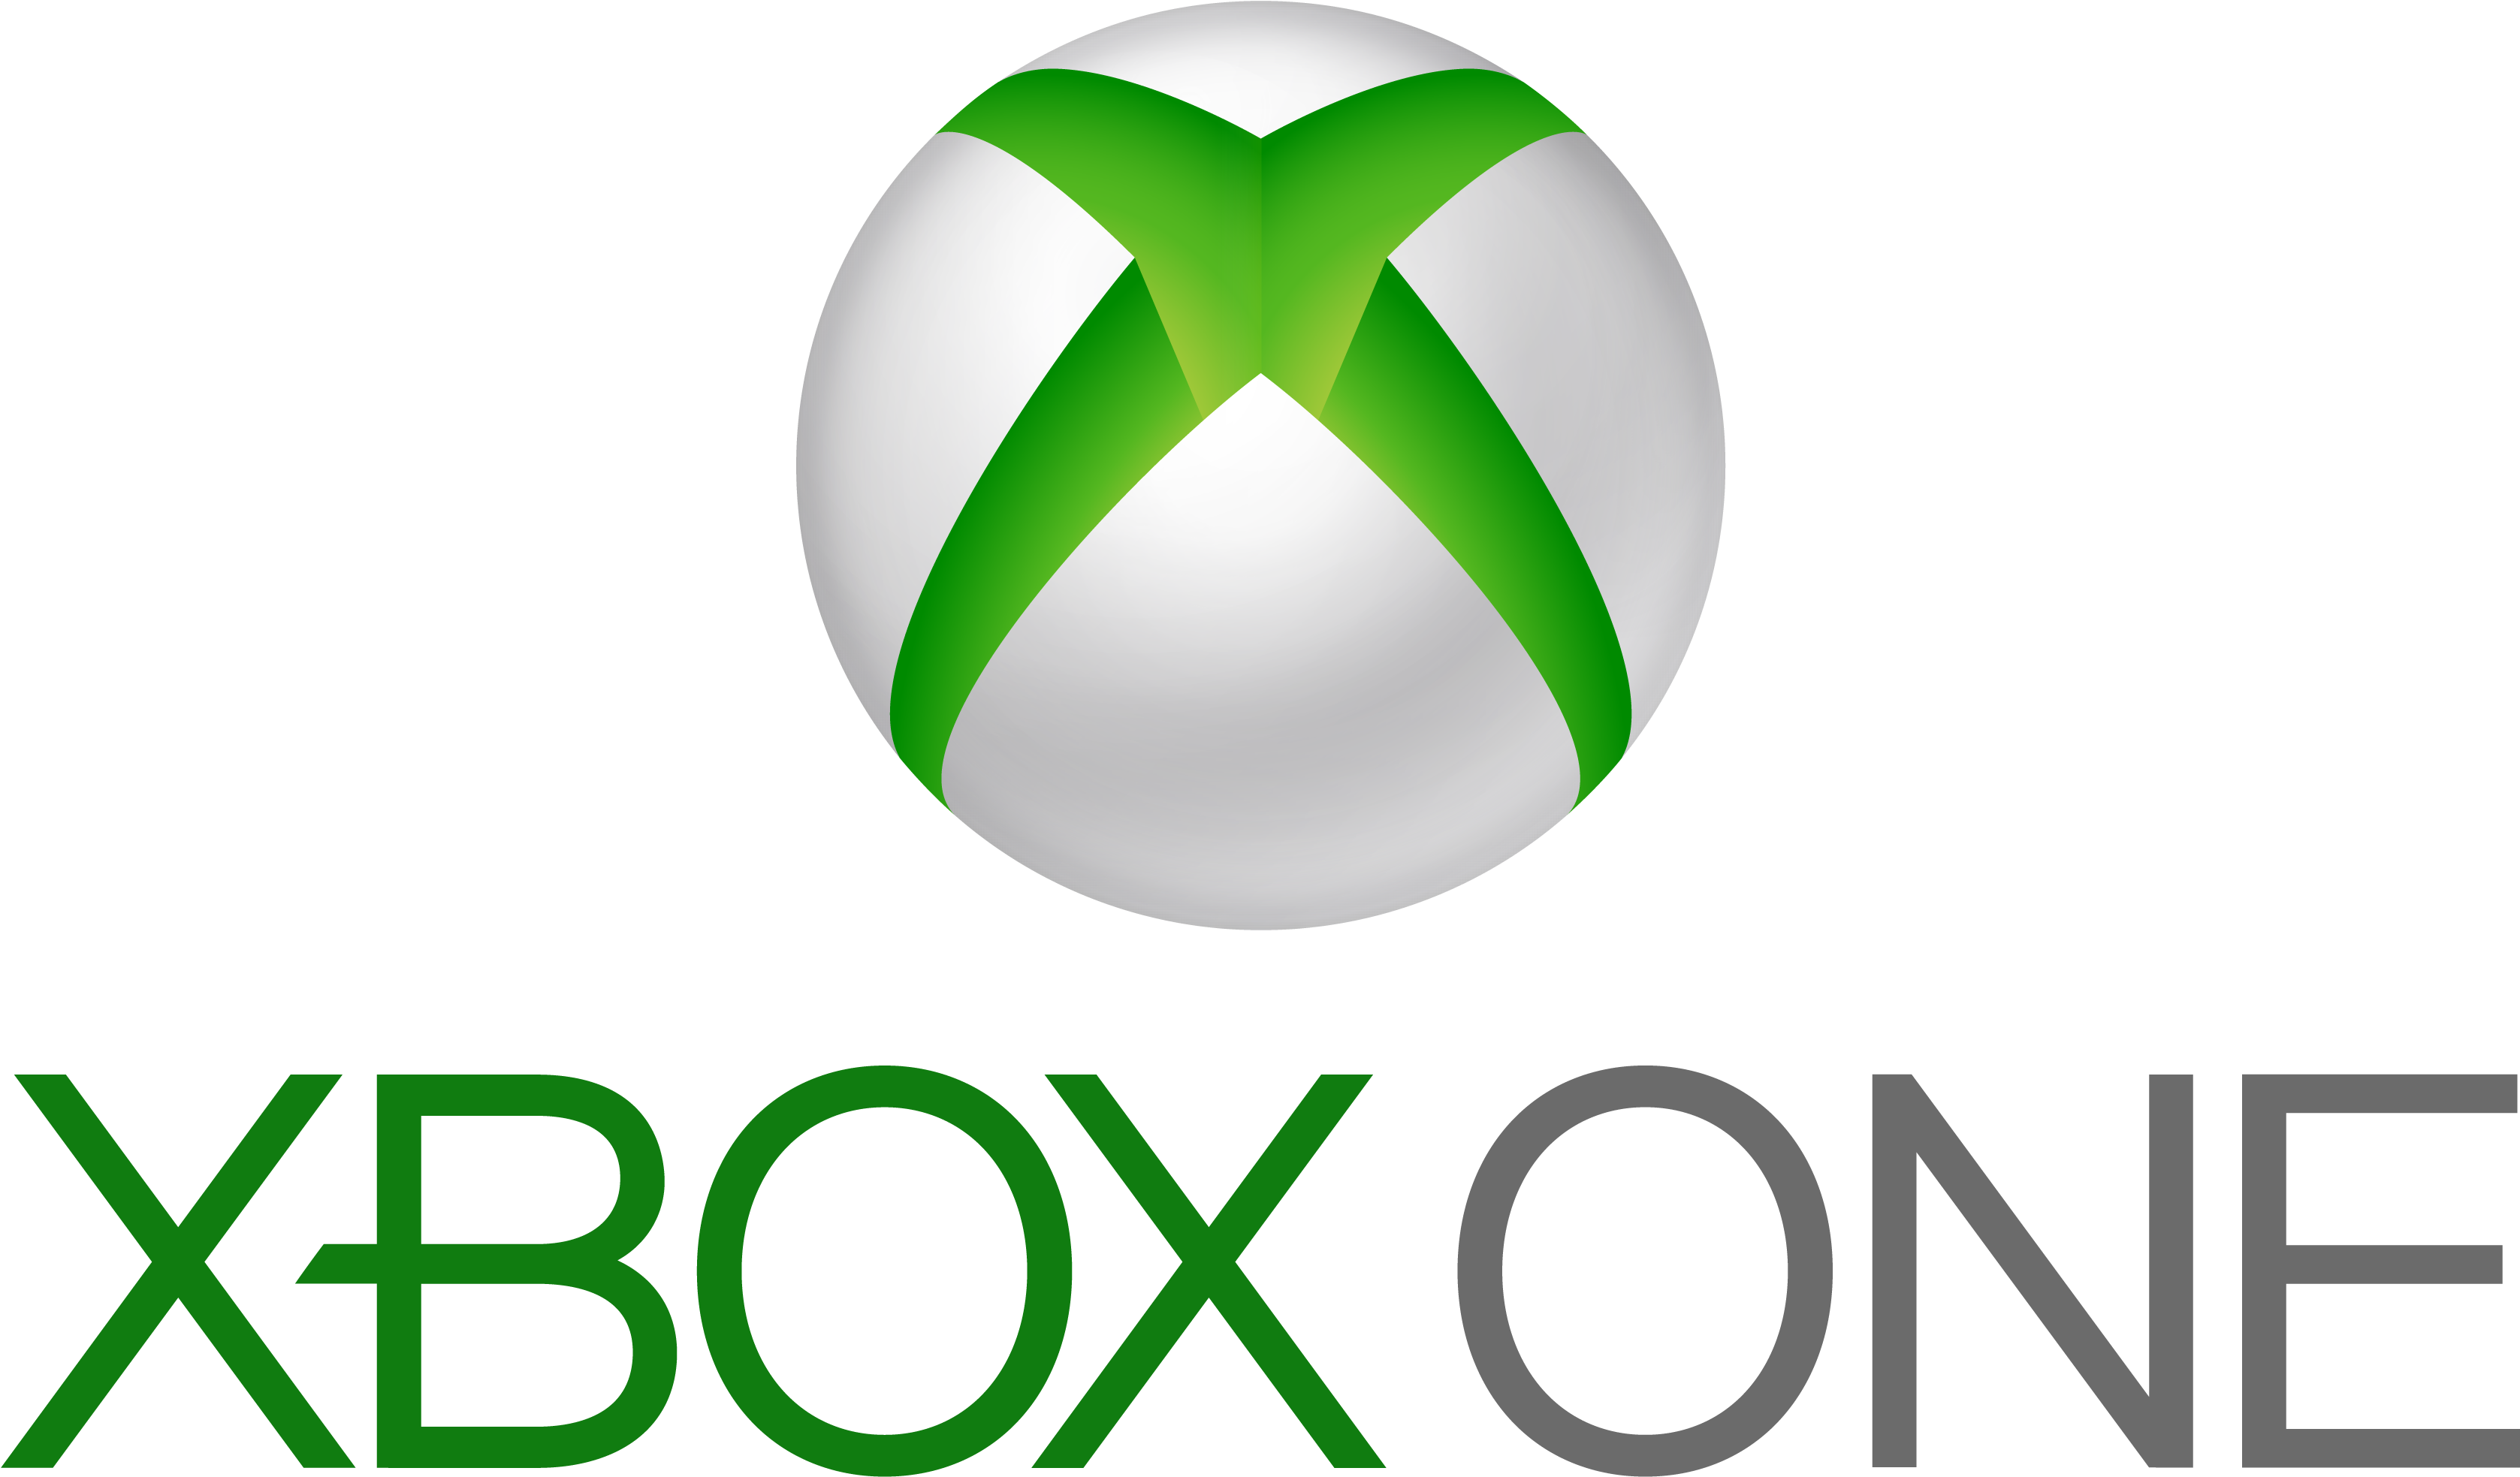 Сеть хбокс. Xbox 360 logo. Xbox one лого. Логотип Икс бокс. Логотип Xbox one s.